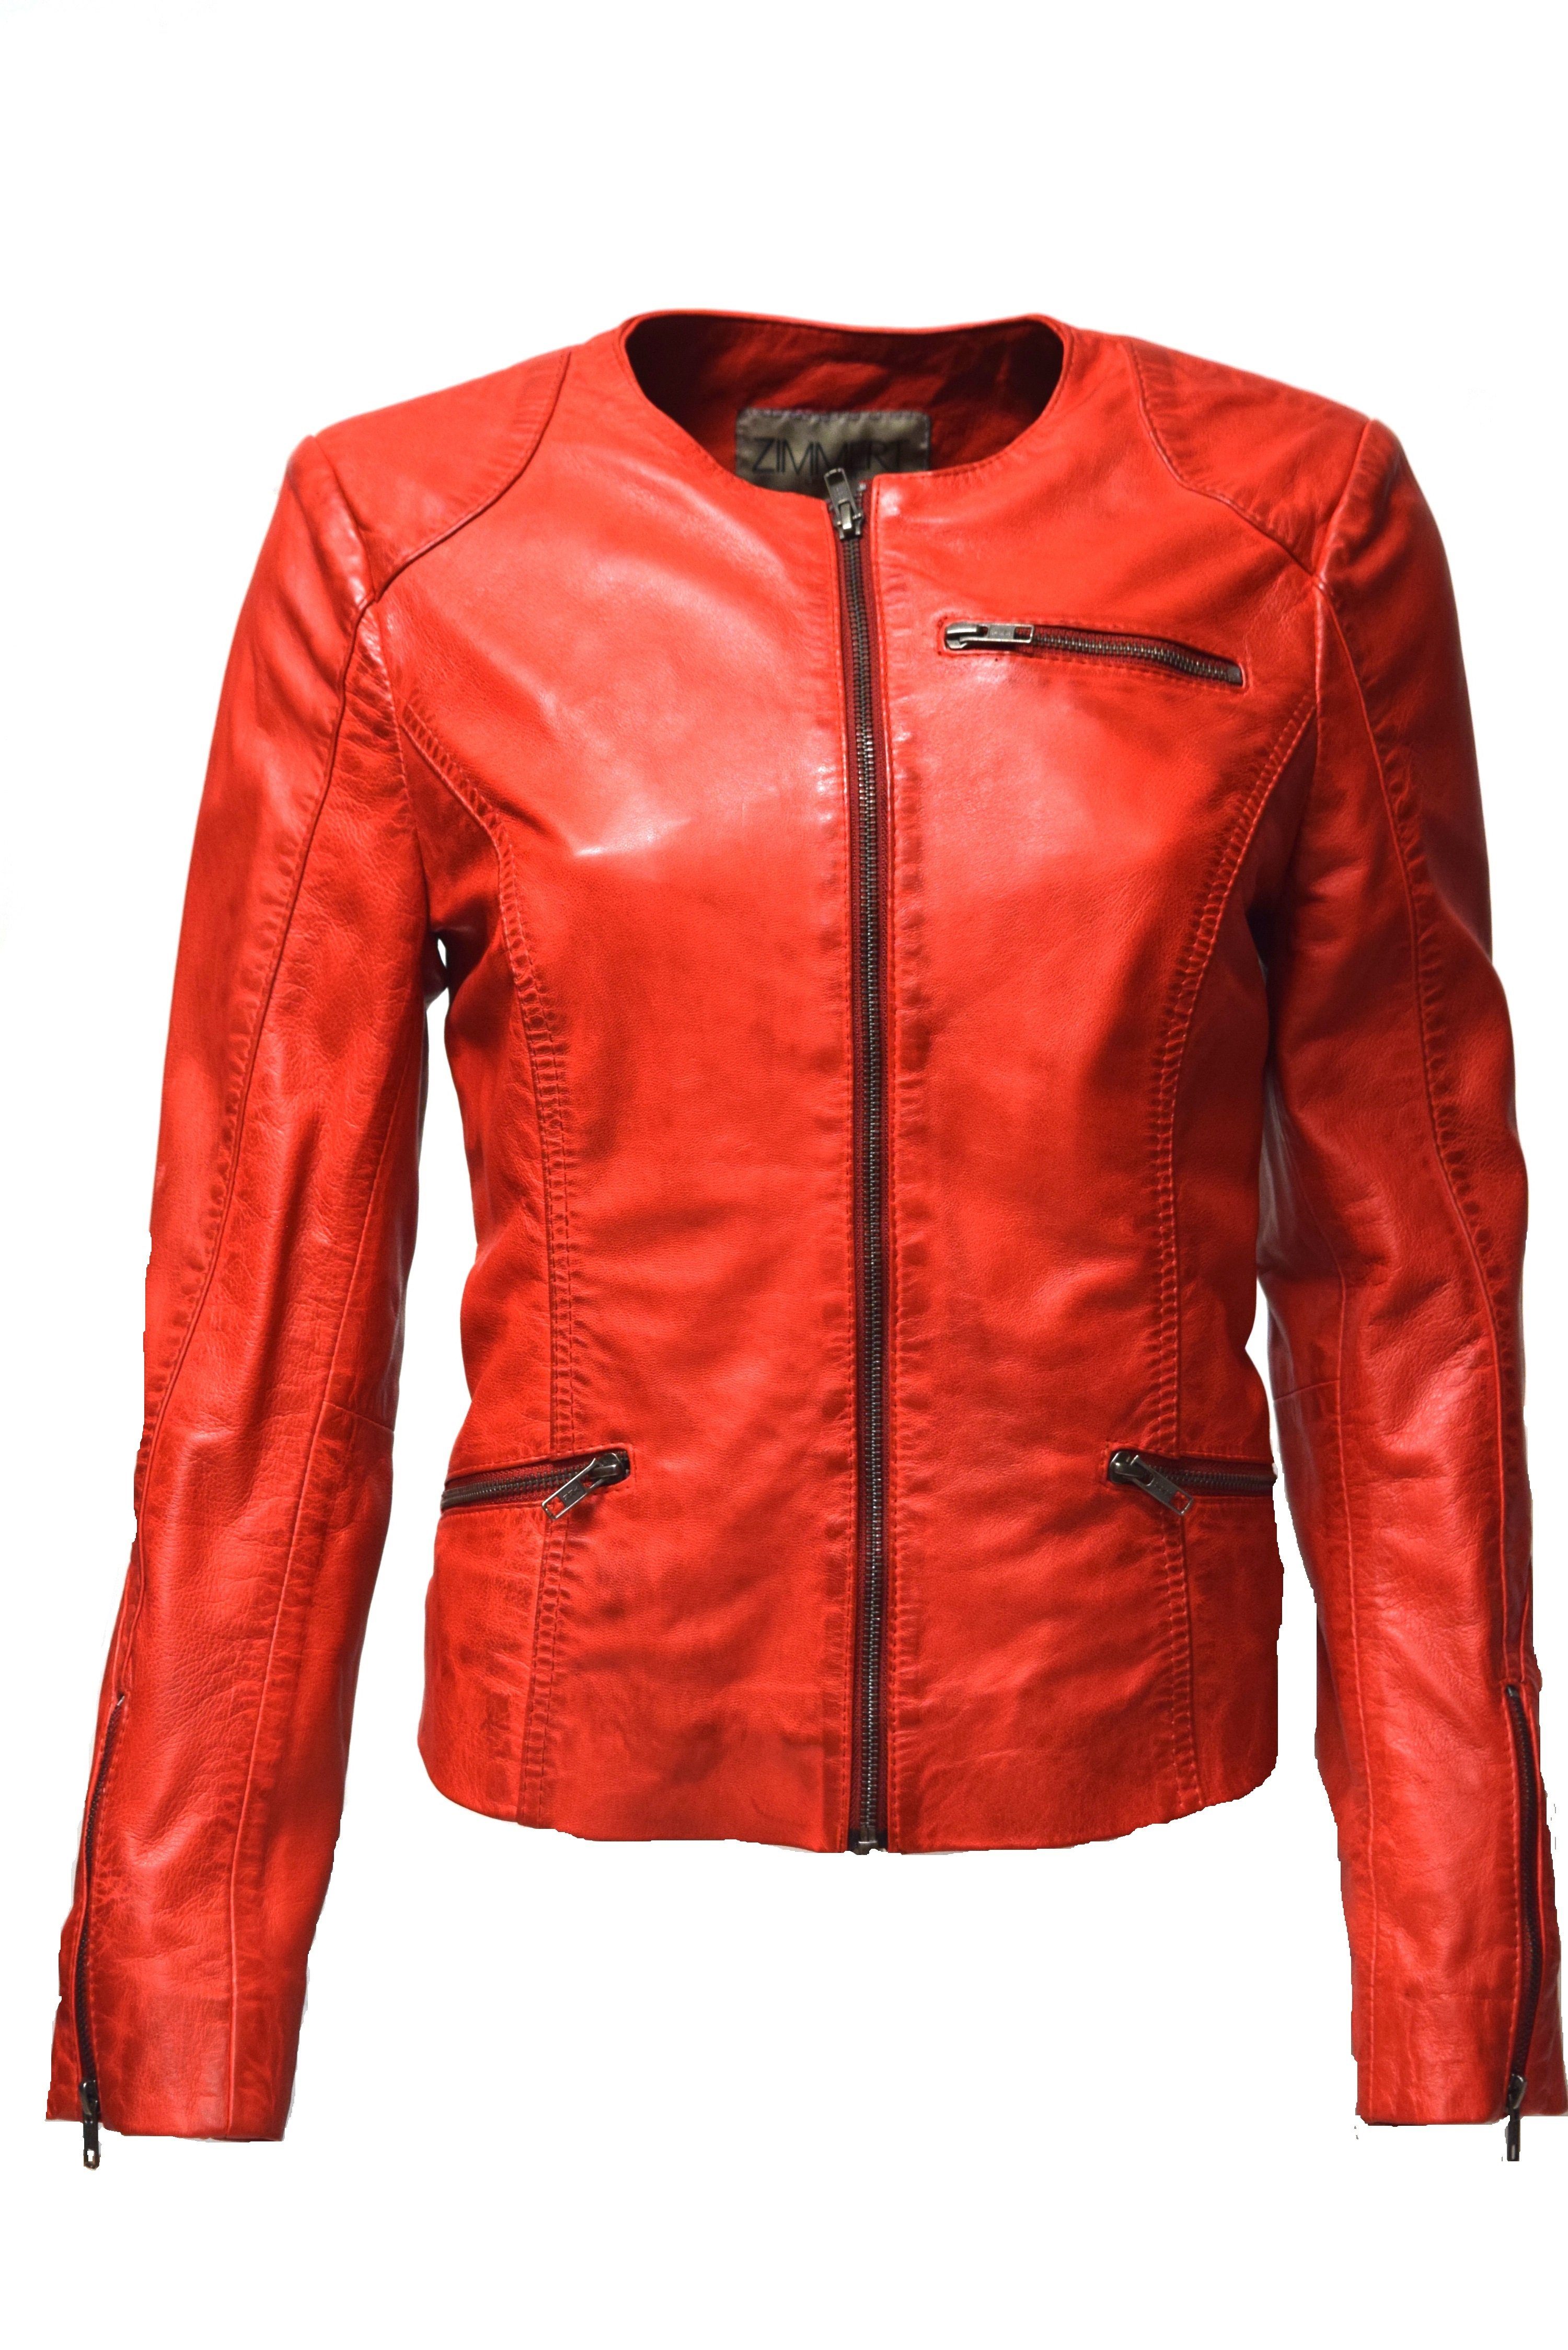 Zimmert Leather Lederjacke Kim Kragenlos, leichtes und weiches Leder rot